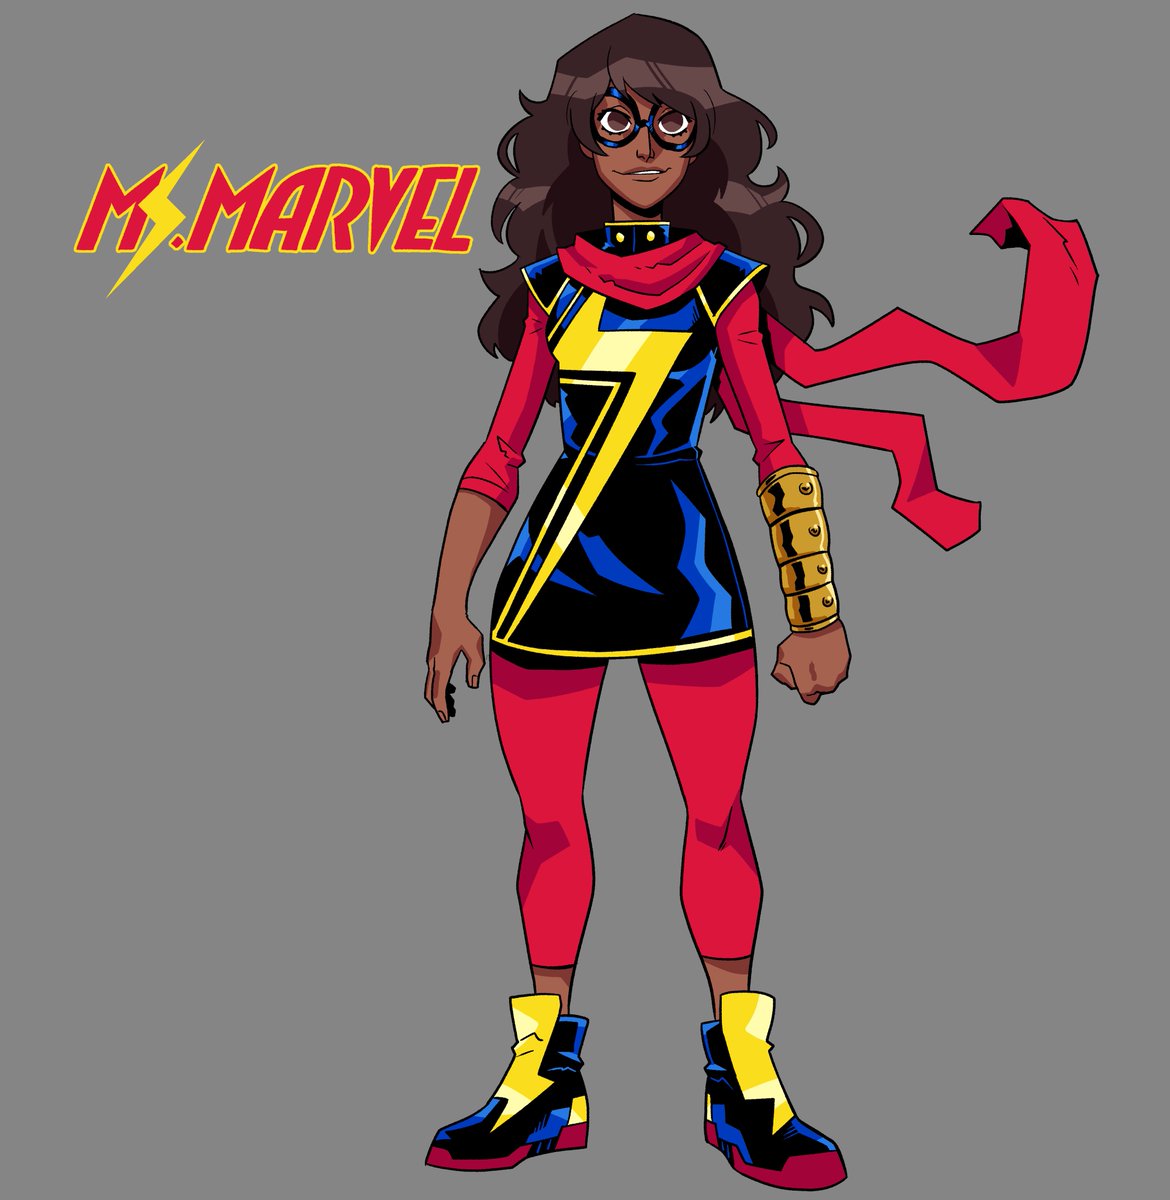 「Ms. Marvel 」|Gabriel Larragánのイラスト